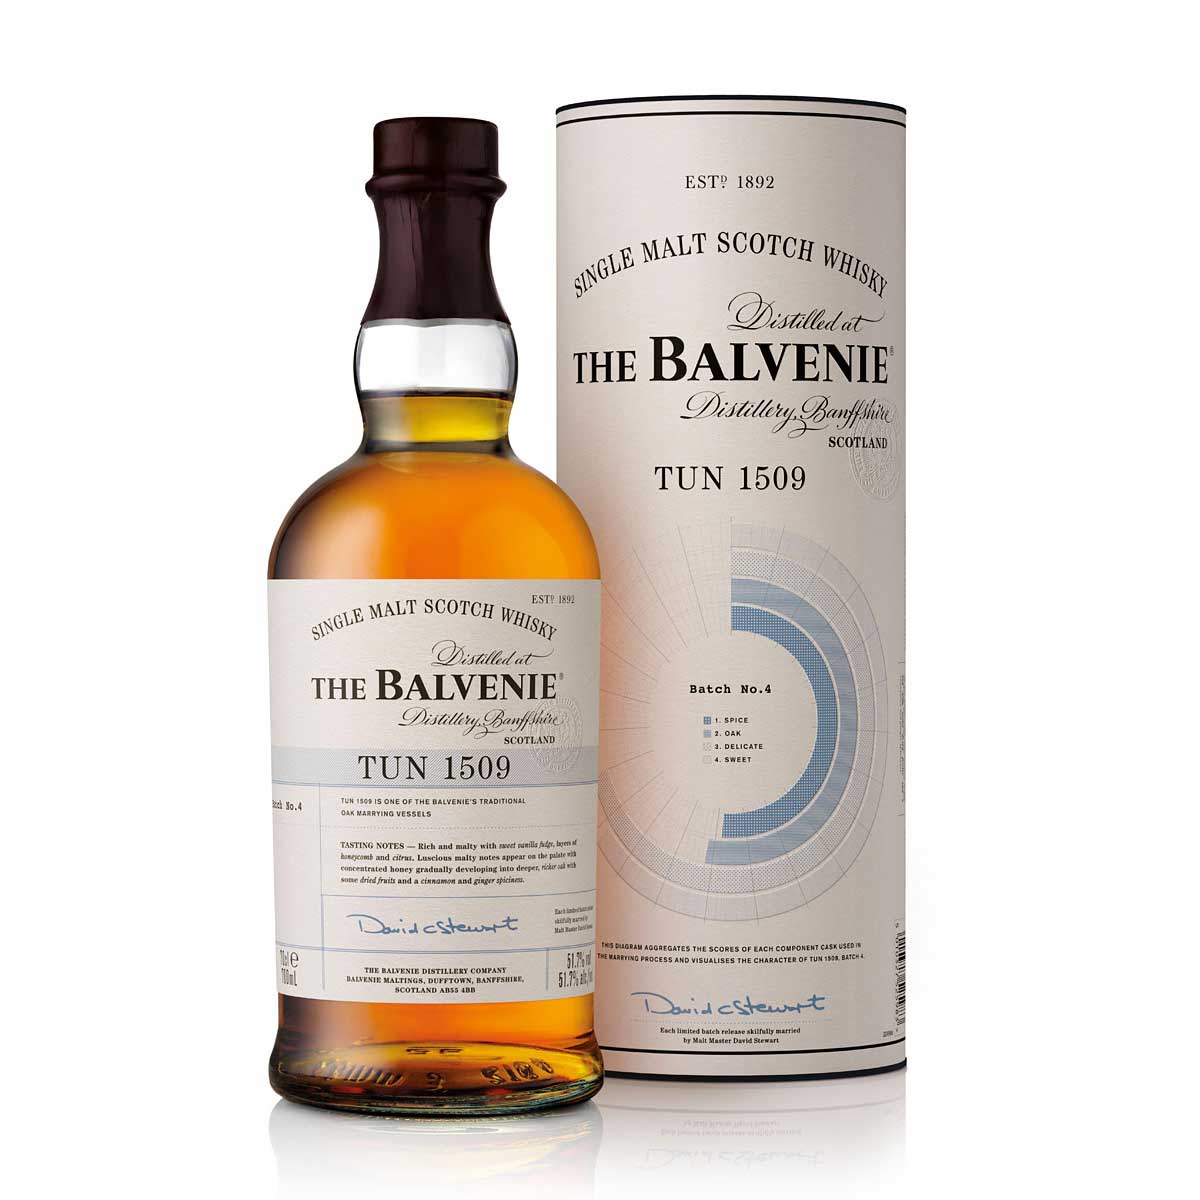 TAG Liquor Stores BC - The Balvenie Tun 1509 Batch No.4 Scotch Whisky